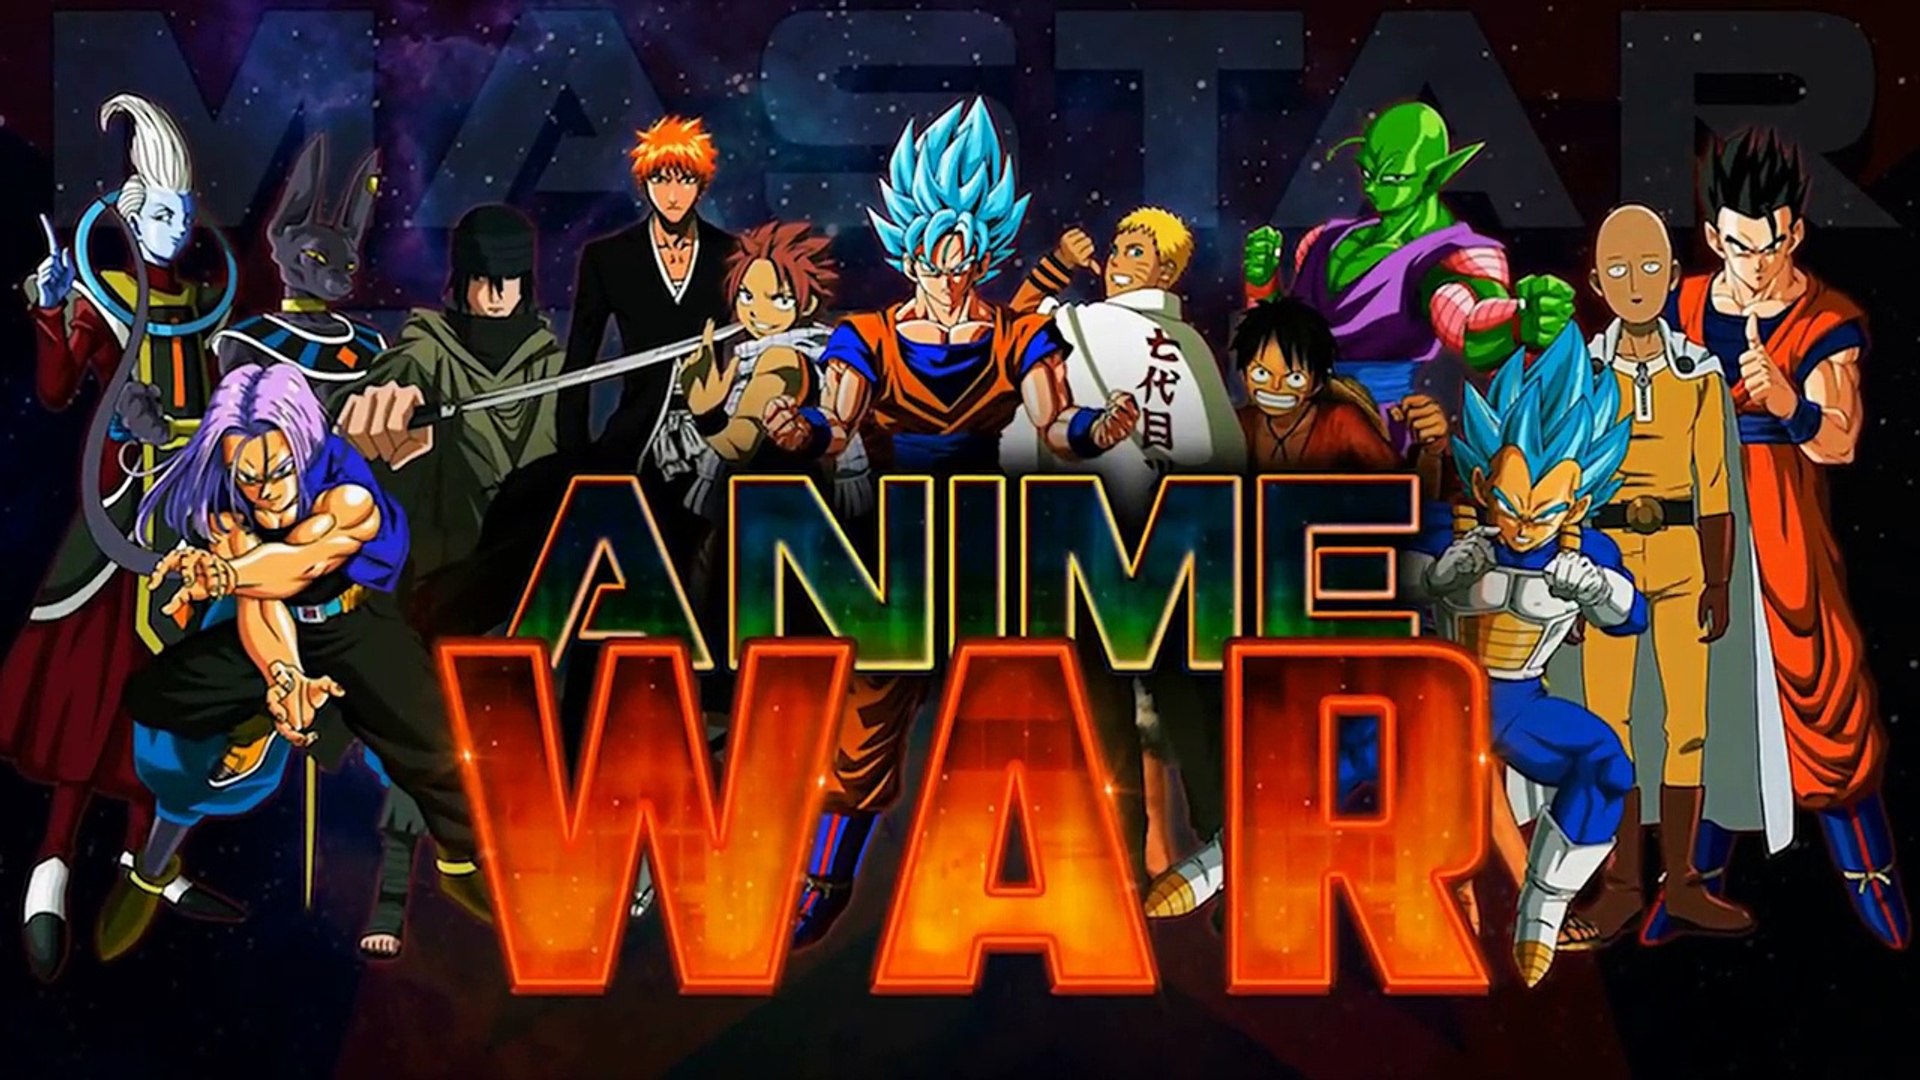 Anime war (mastar media)